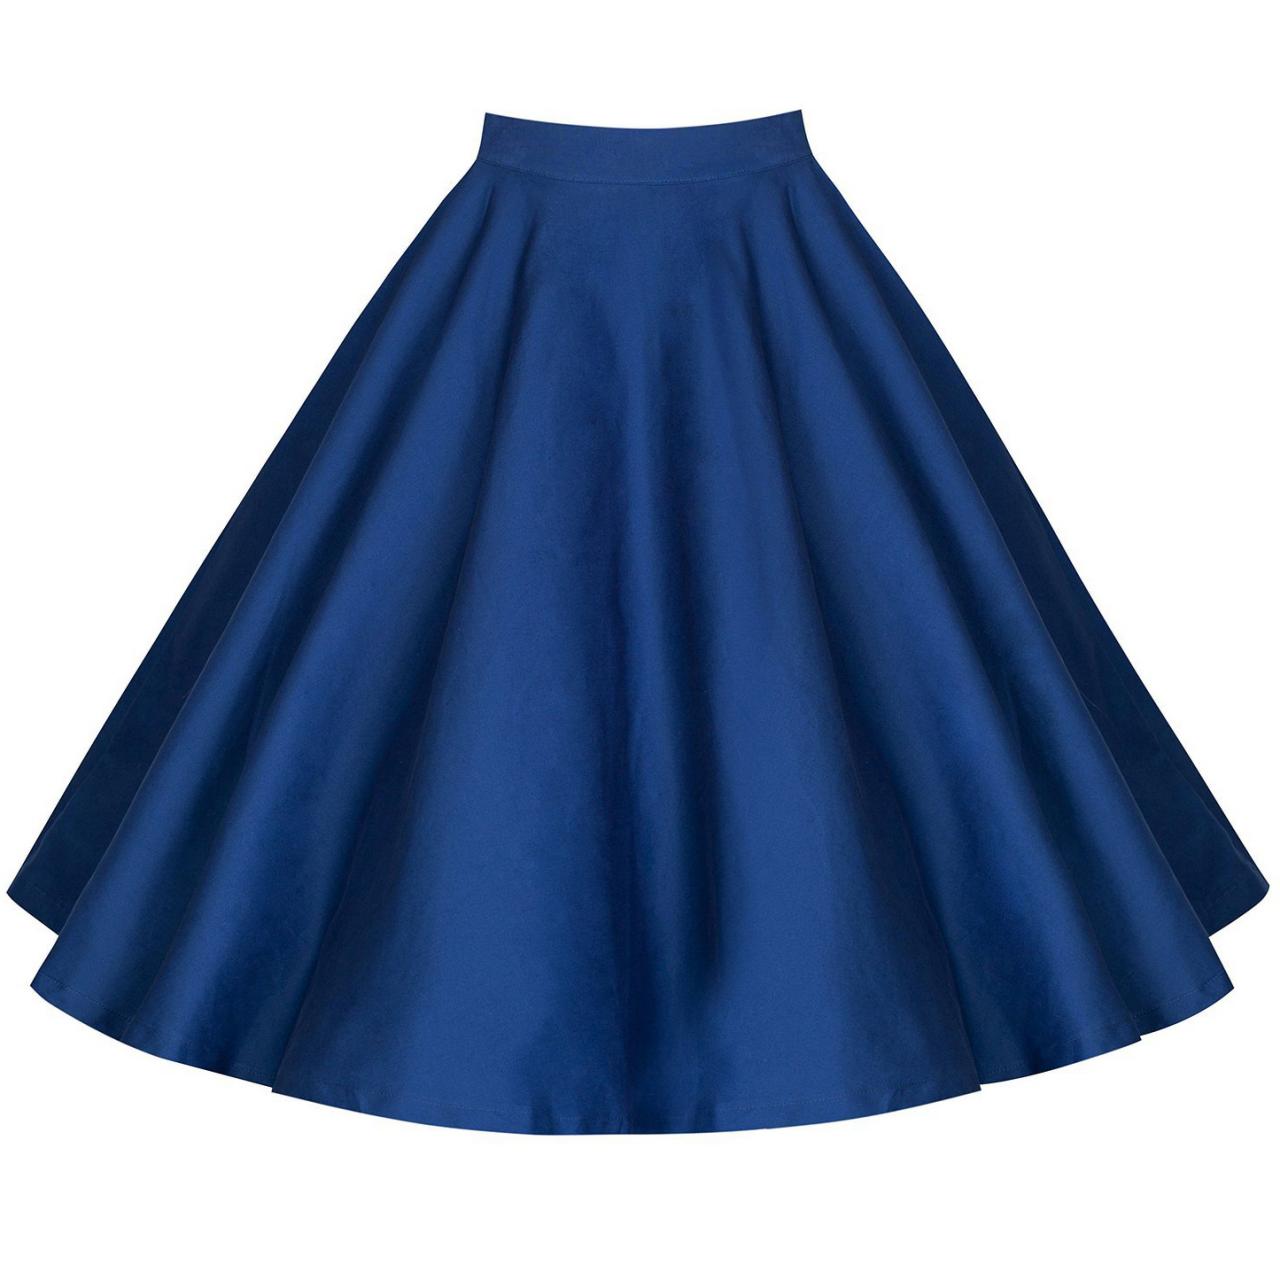 Women Floral Print/Polka Dot Skirt High Waist Vintage 50s 60s A Line Midi Skater Skirt blue 